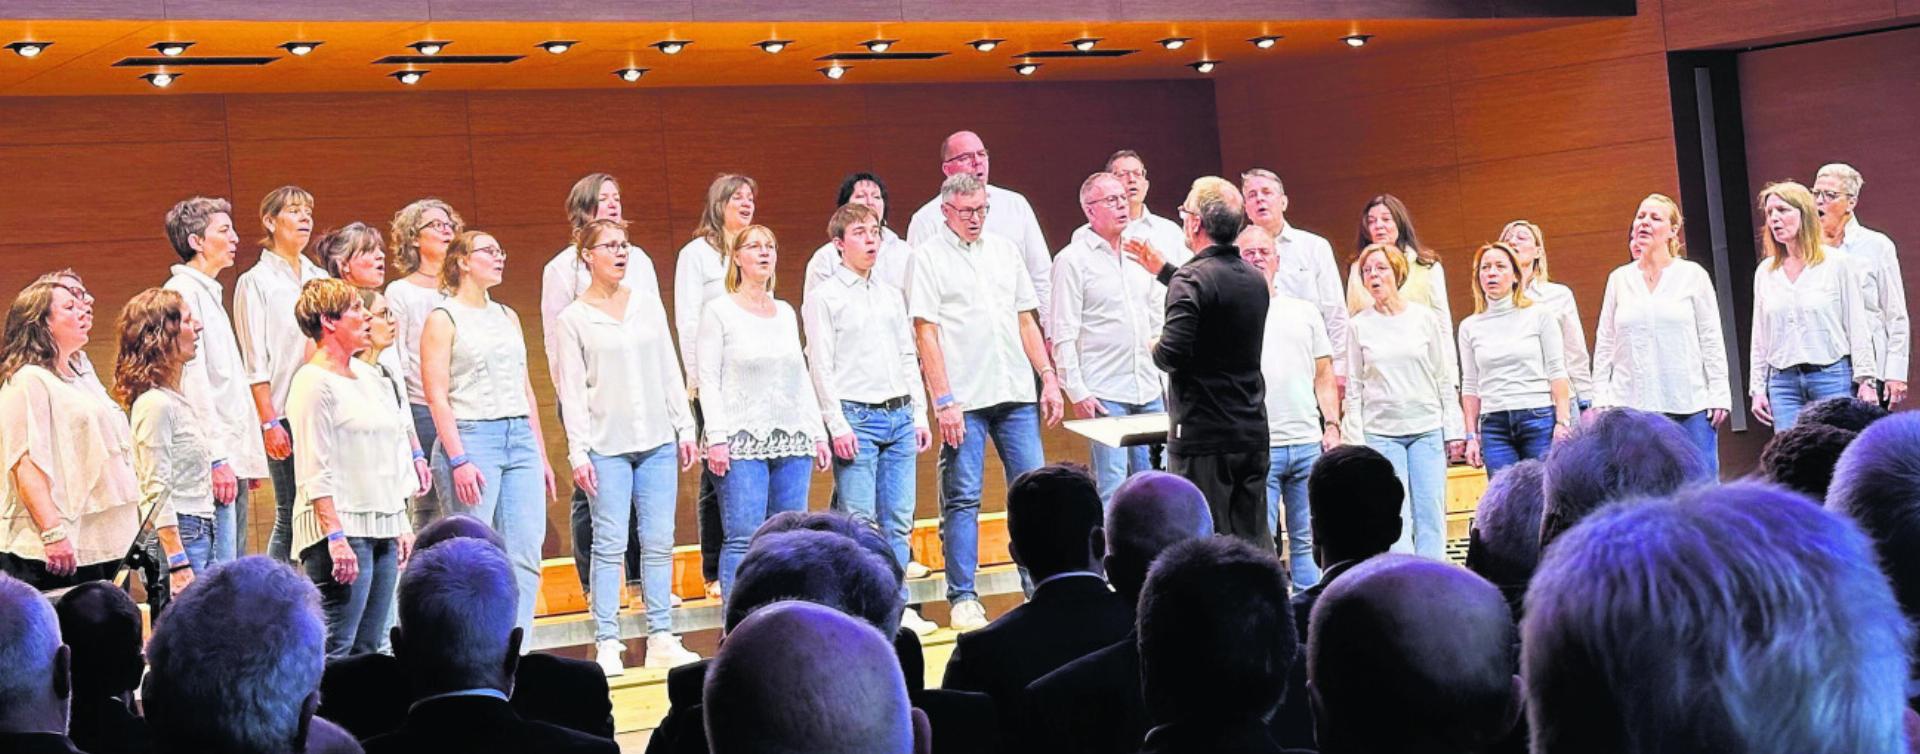 Die VocalFriends bei ihrem Auftritt in Maienfeld. Foto: zVg